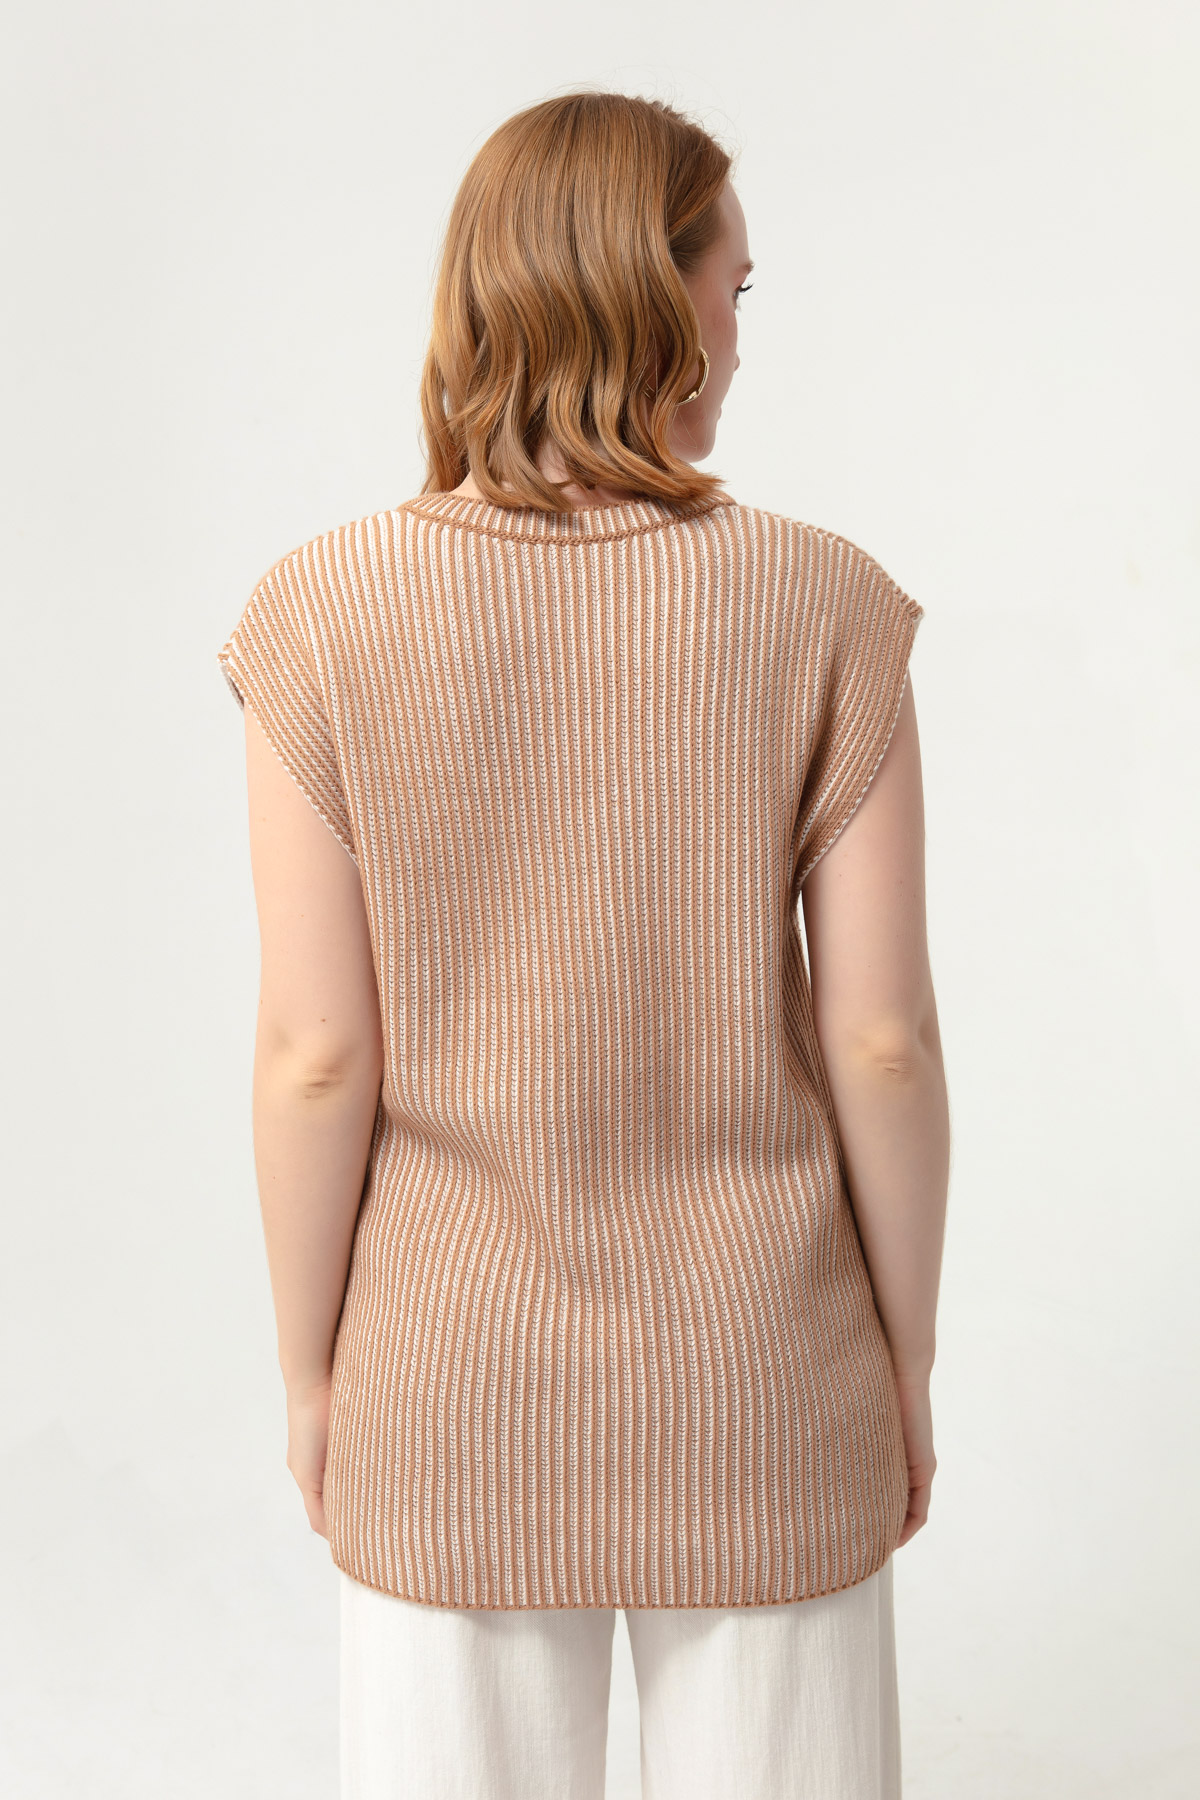 Women's Tan Striped Knitwear Sweater